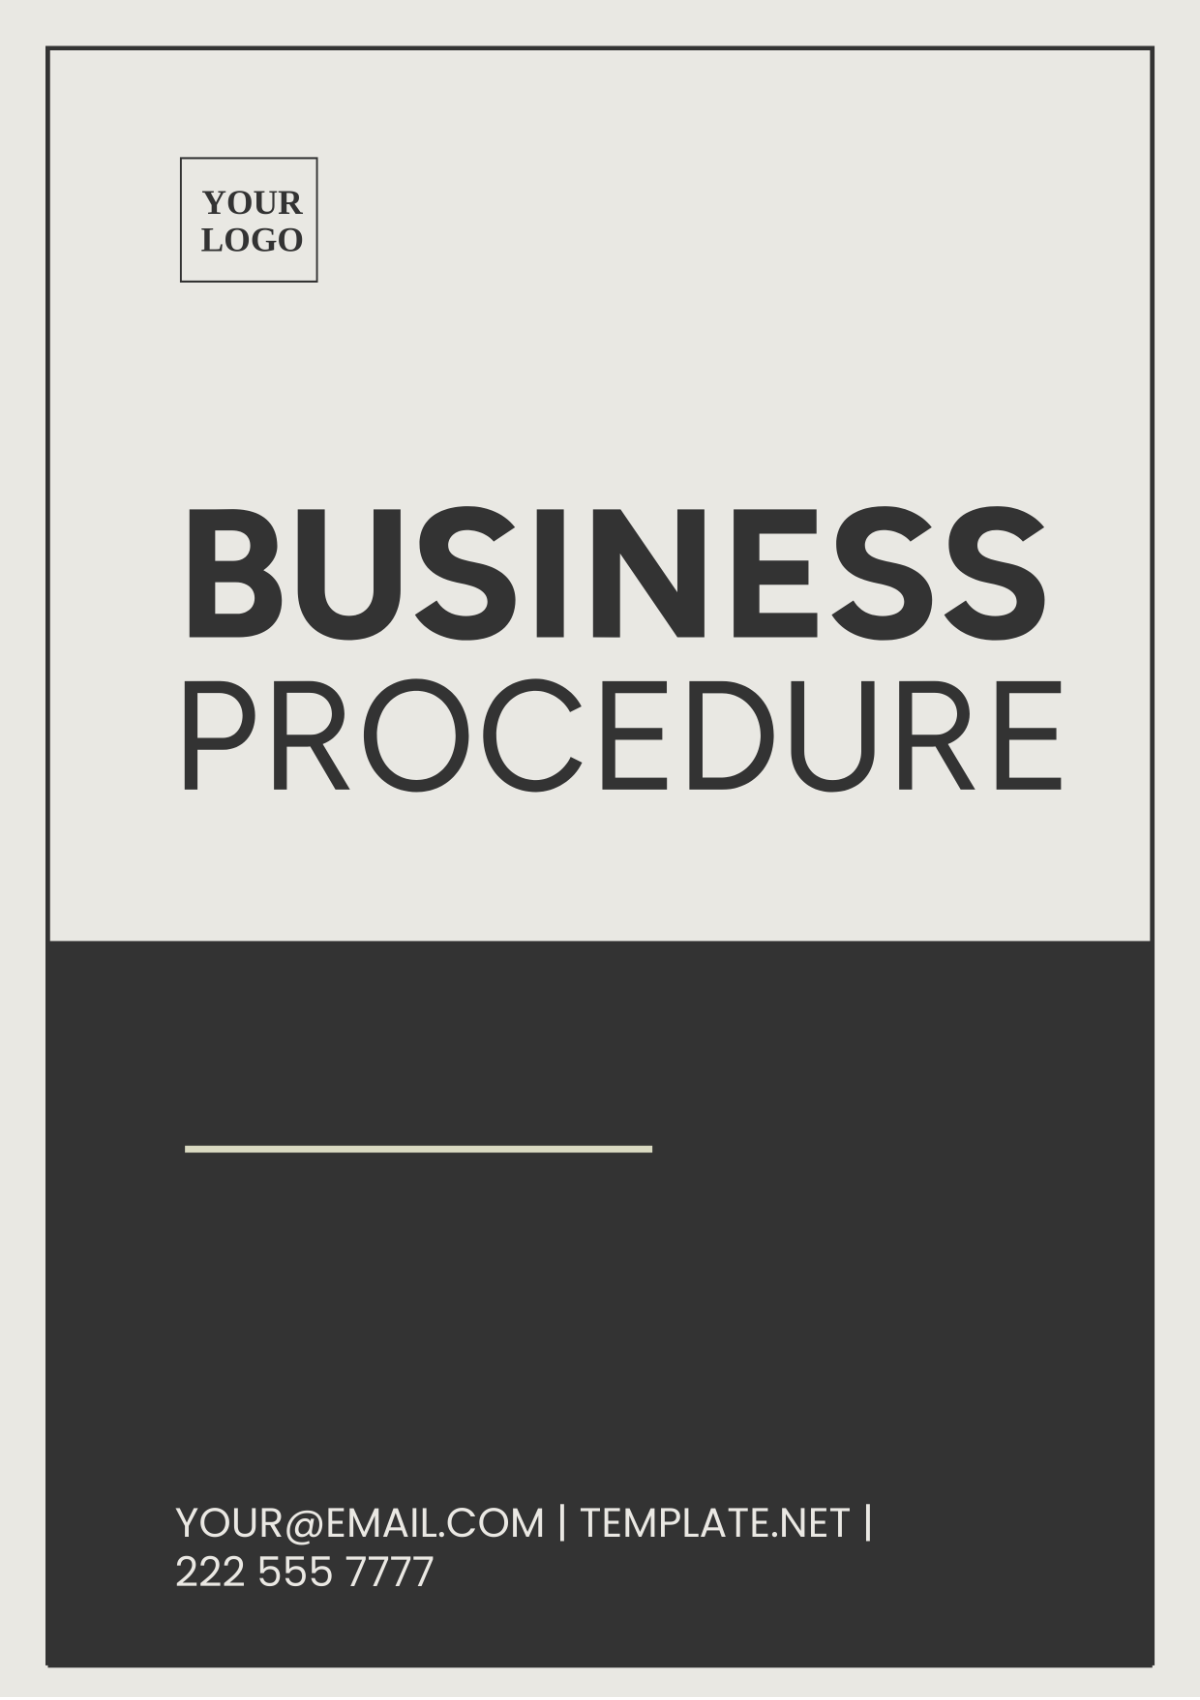 Business Procedure Template